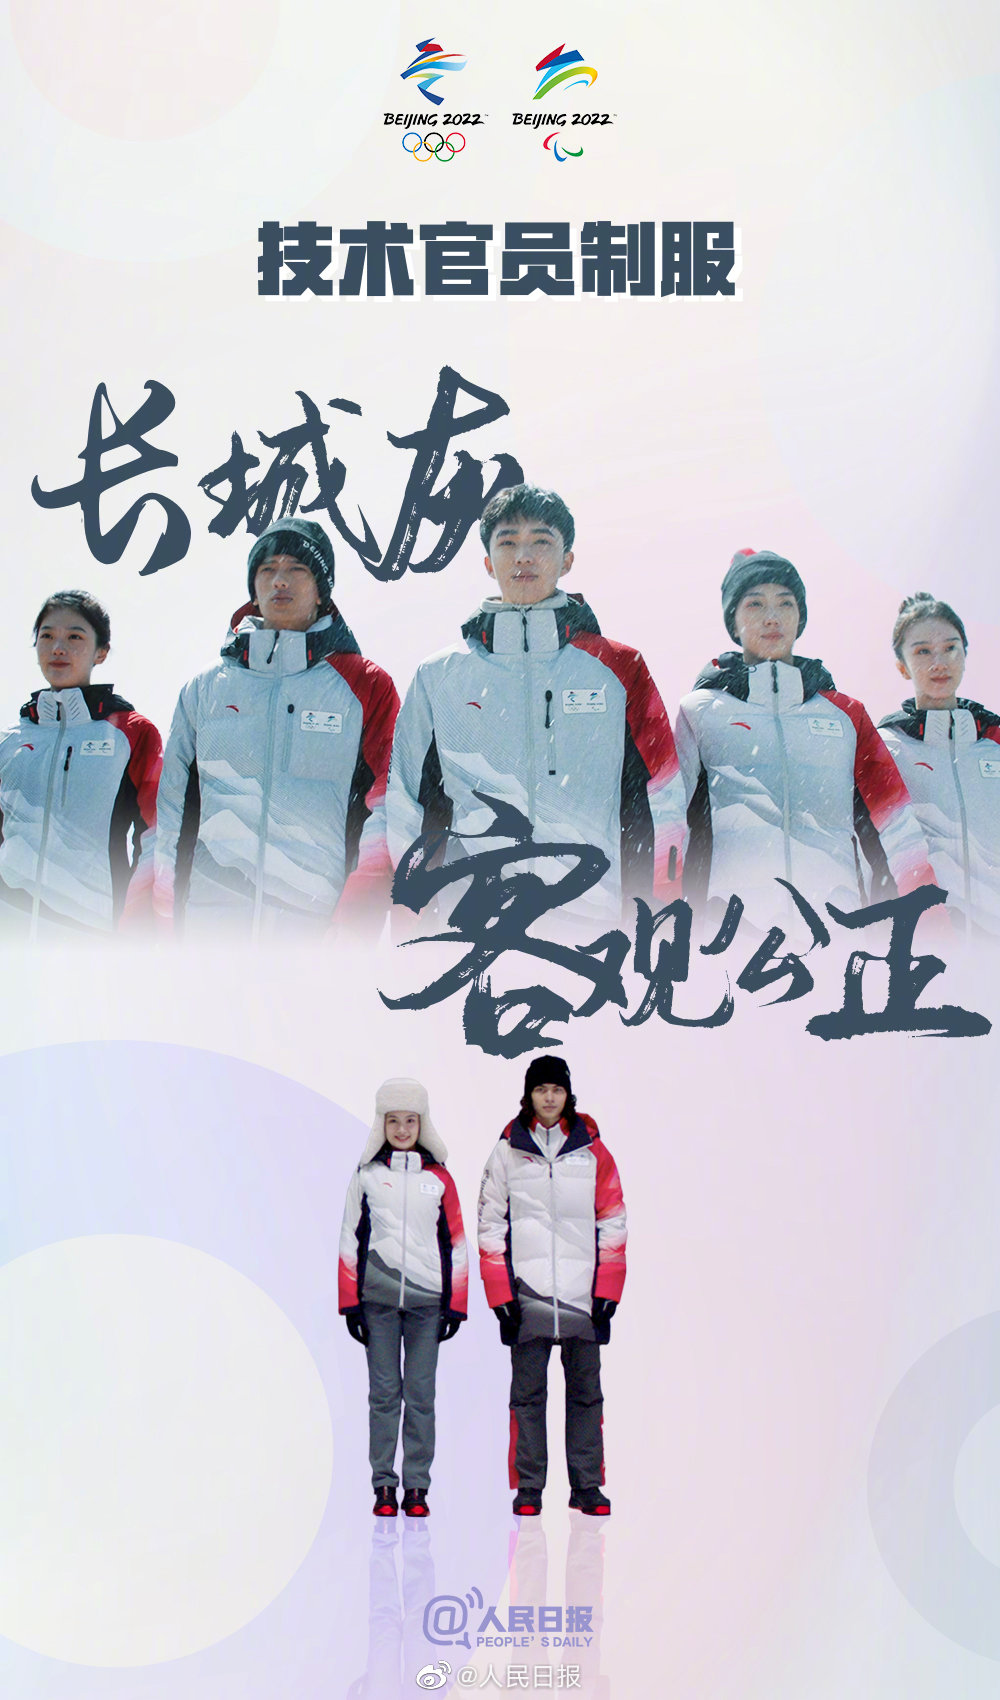 北京冬季五輪公式ウェアは中国の水墨画をイメージしたカラー